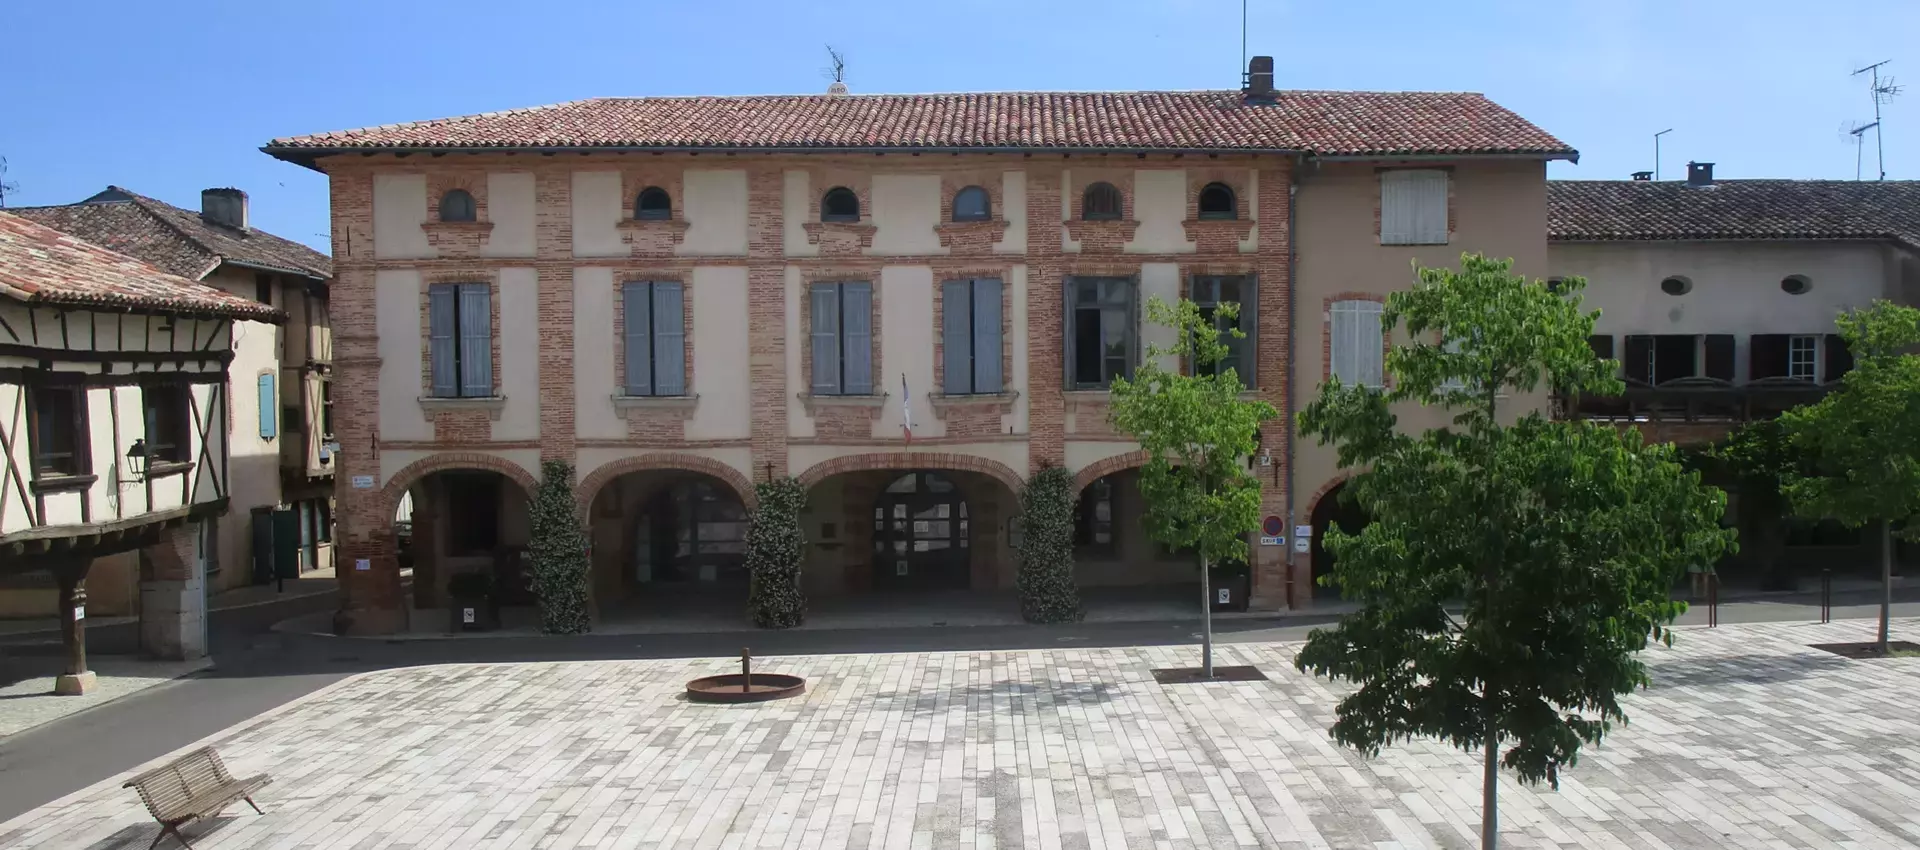 Centre Communal d'Action Sociale de la commune de Réalville (82) Tarn et Garonne